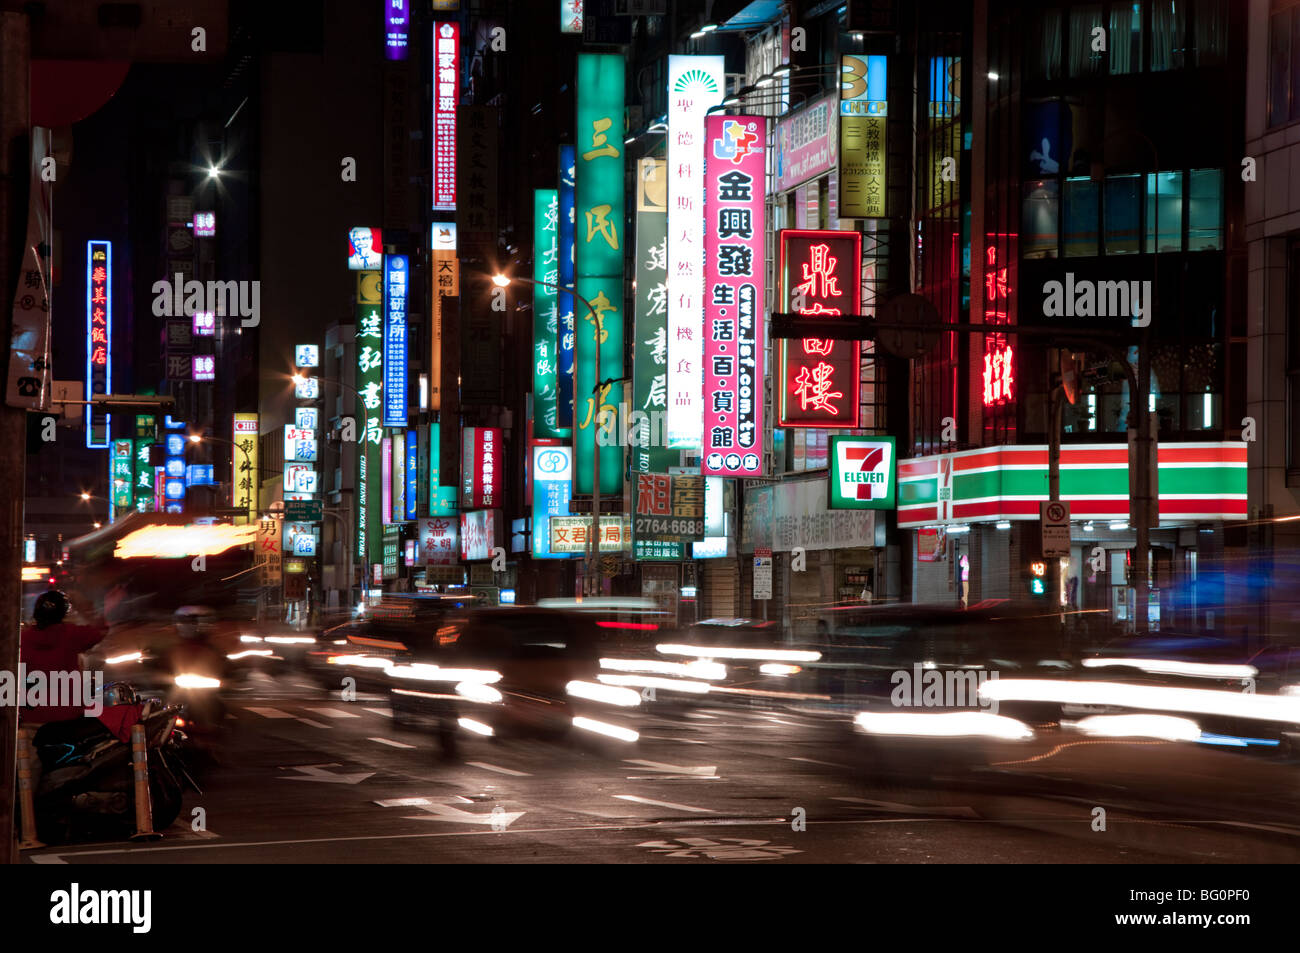 City at night, Taipei, Taiwan, Asia Stock Photo